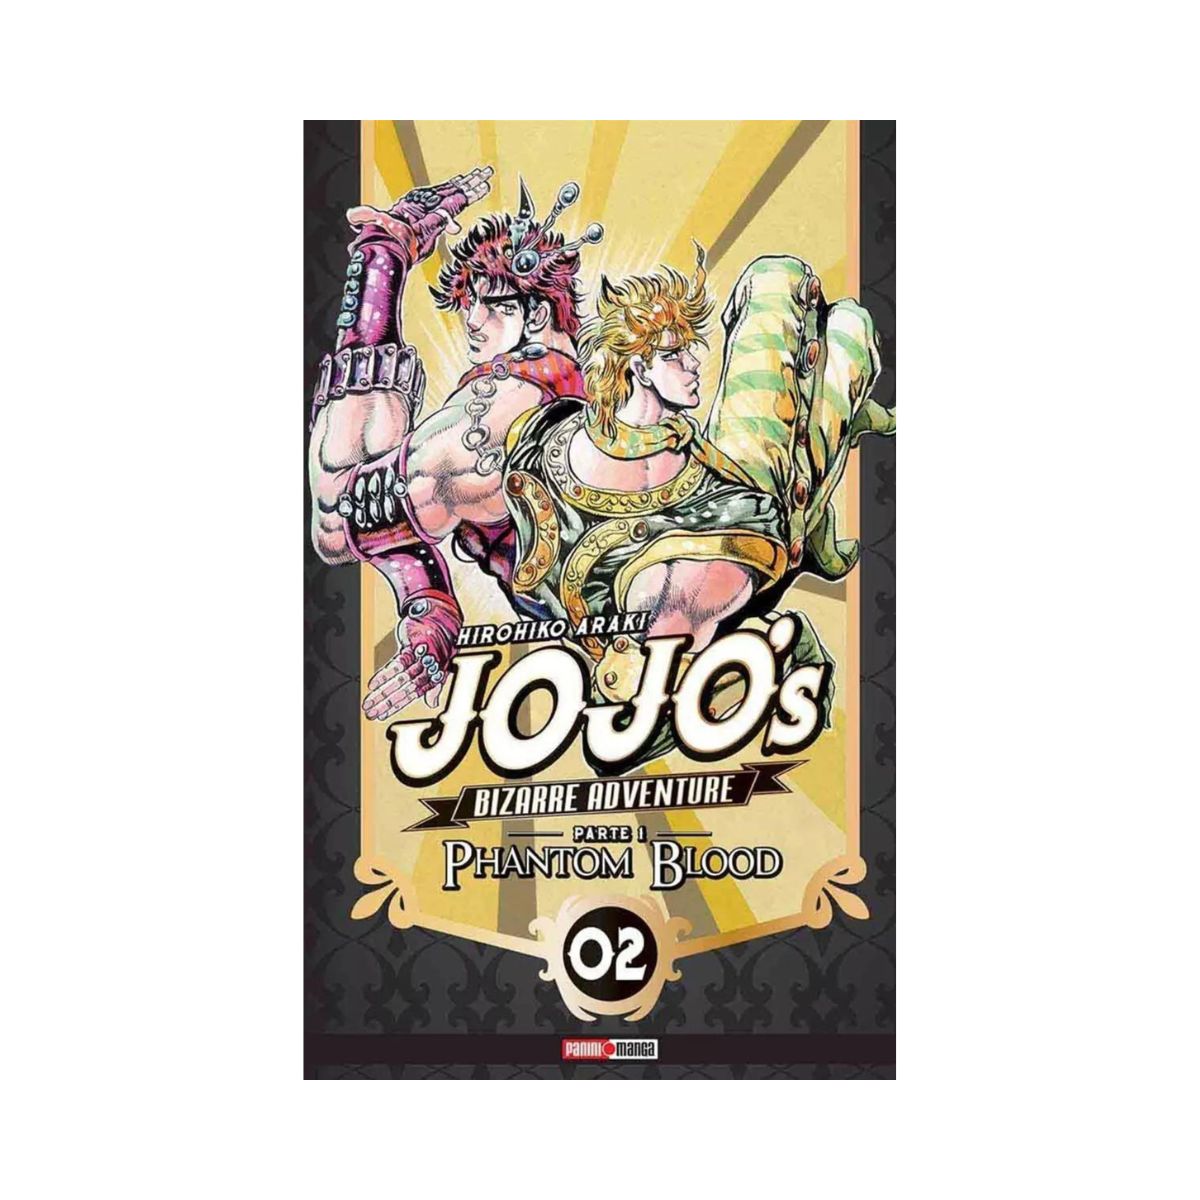 Jojo's Bizarre Adventure Manga Completo Panini Tomo A Elegir - MarchanteMX